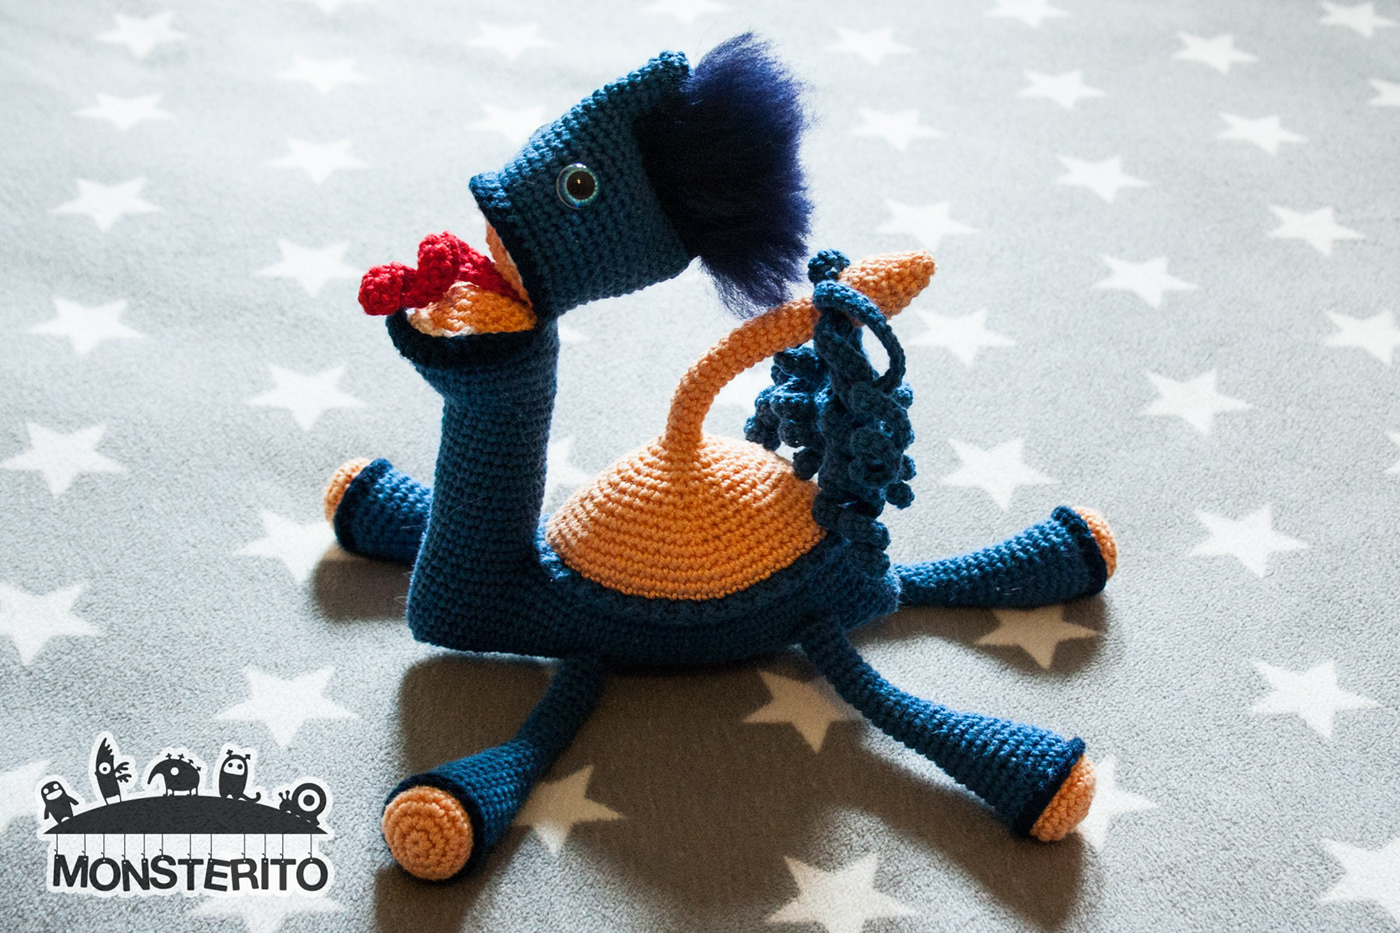 Crochete monster alien toy predator Unique Original onaofakind handmade artist